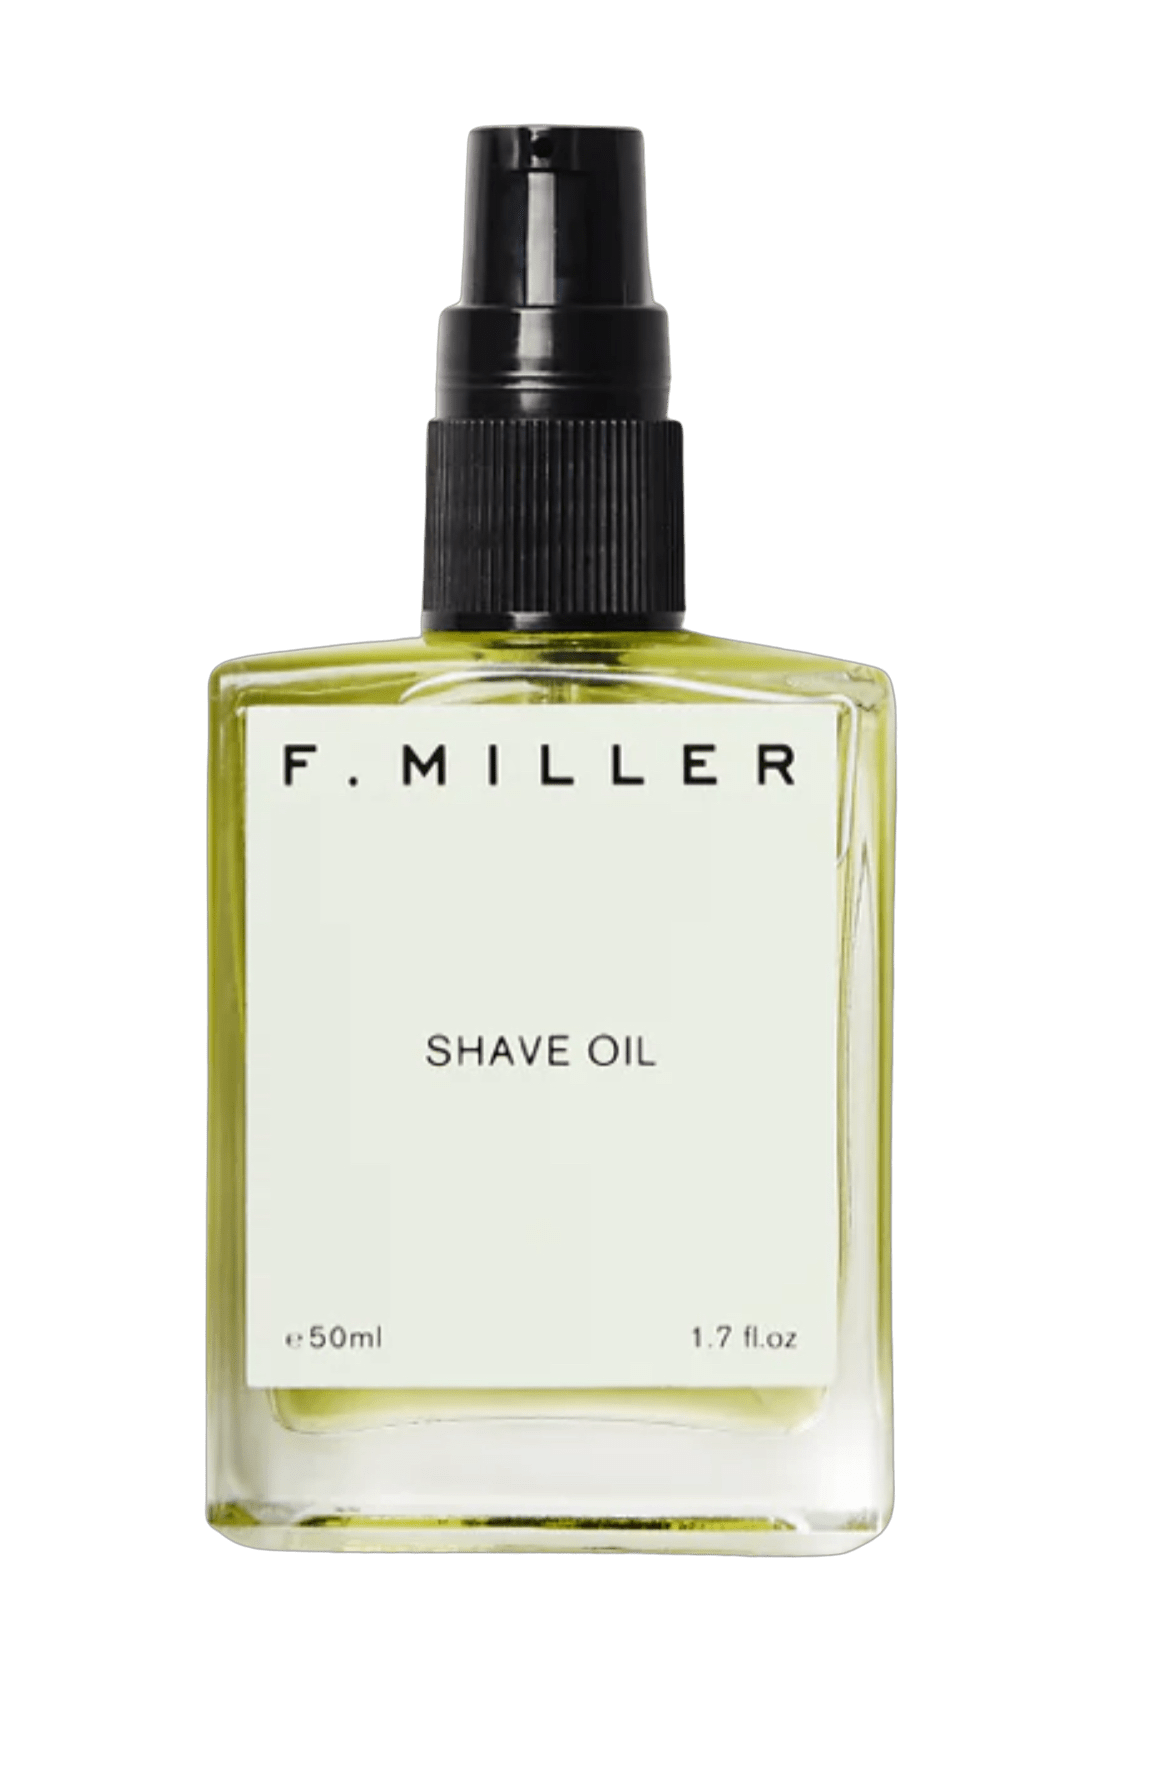 F. Miller shave oil Shave Oil sunja link - canada